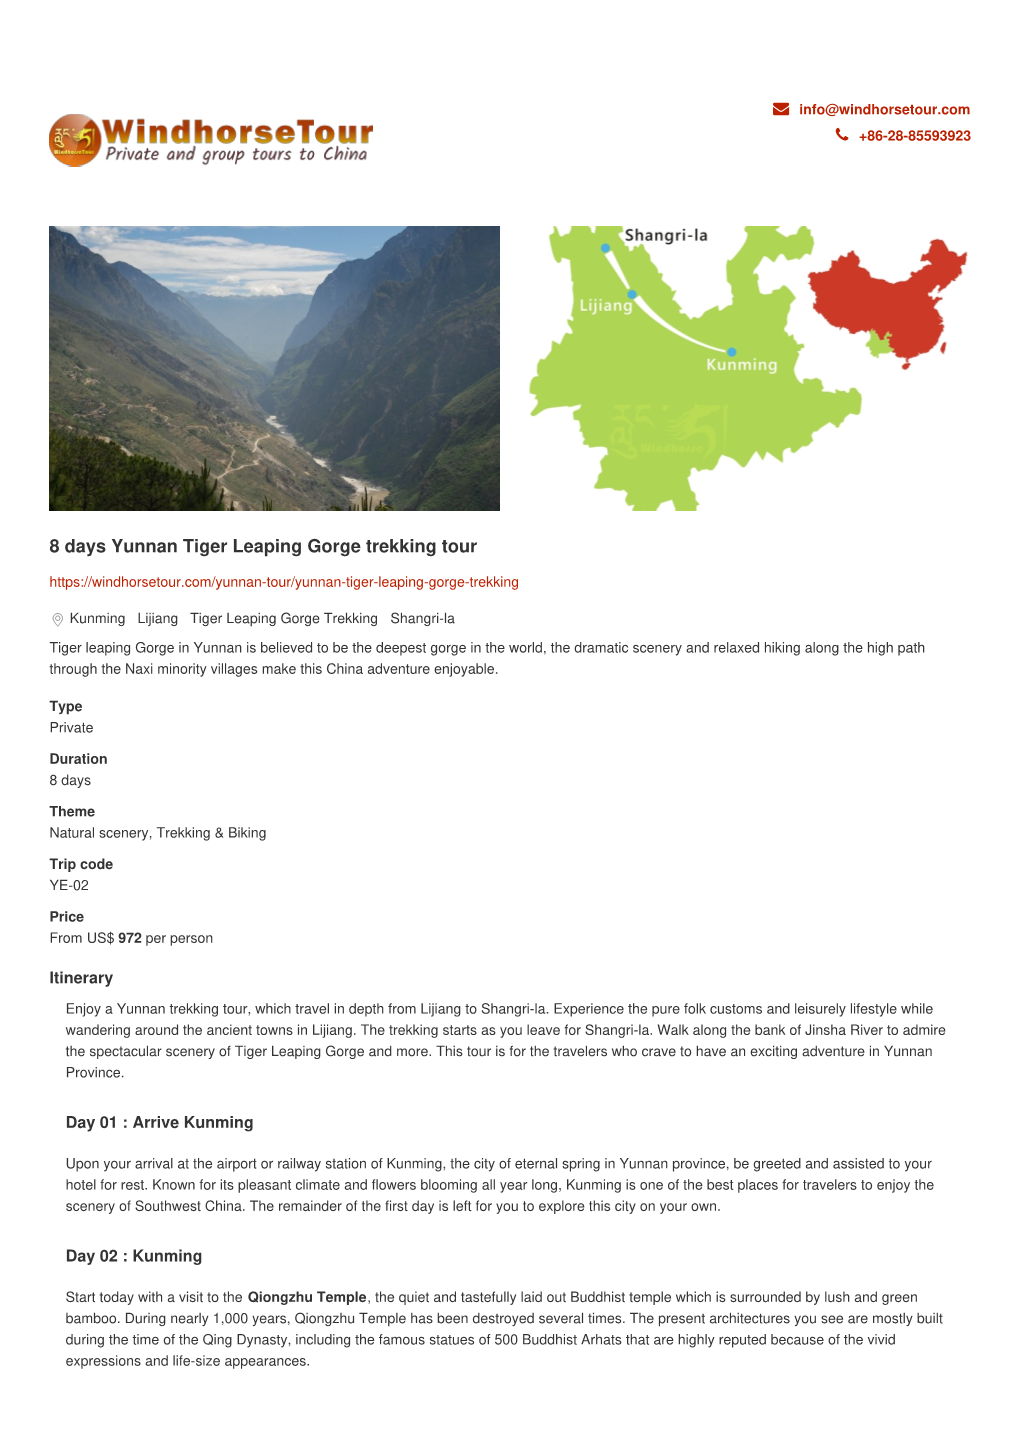 8 Days Yunnan Tiger Leaping Gorge Trekking Tour